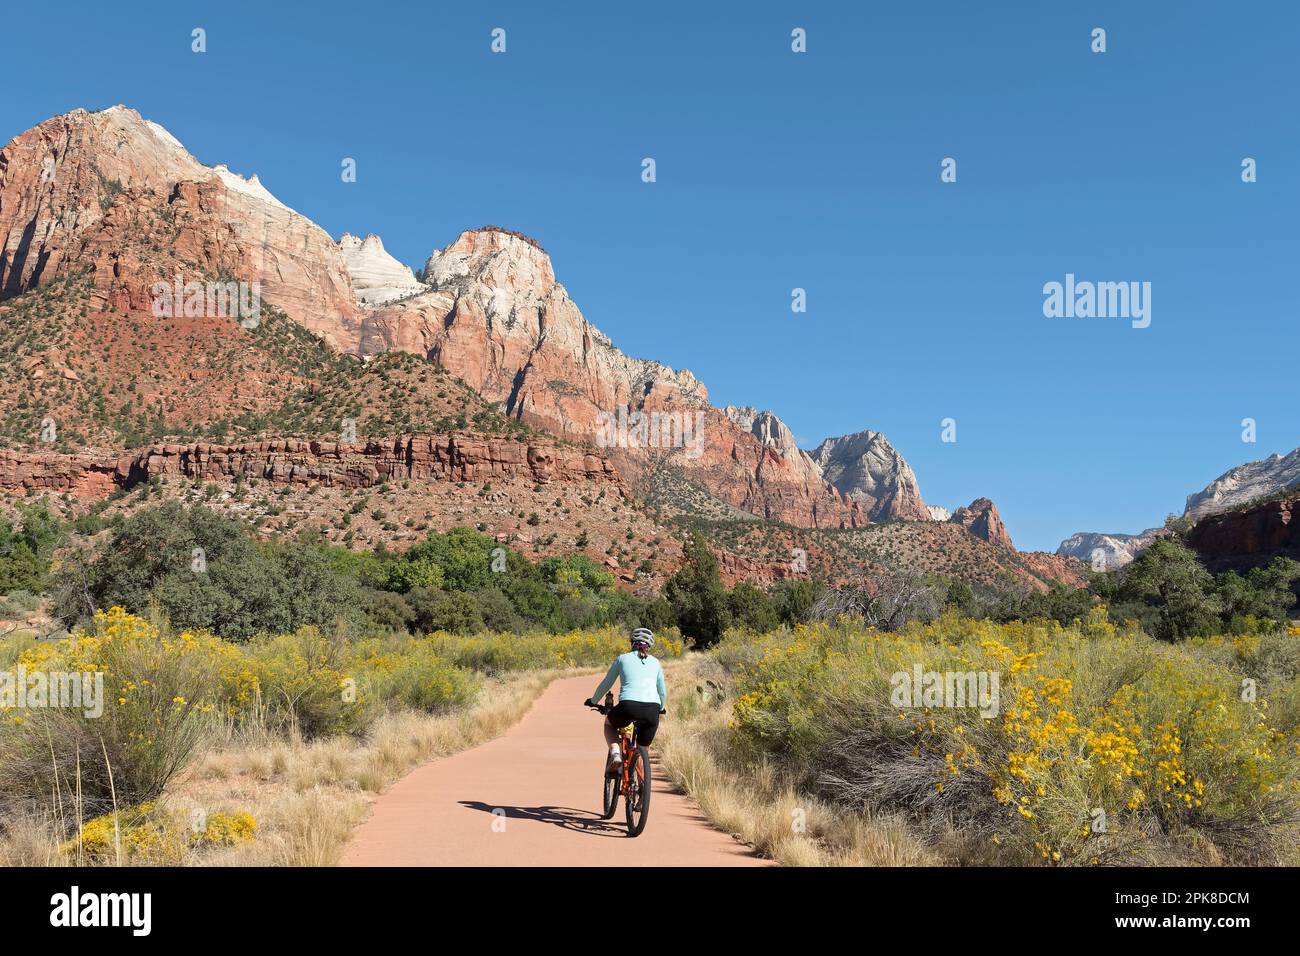 Une jeune femme qui fait du vélo de montagne sur le chemin Pa’rus Trail, un sentier pavé et facile au pied des montagnes abruptes du canyon de Zion, par une journée d'automne claire et ensoleillée Banque D'Images